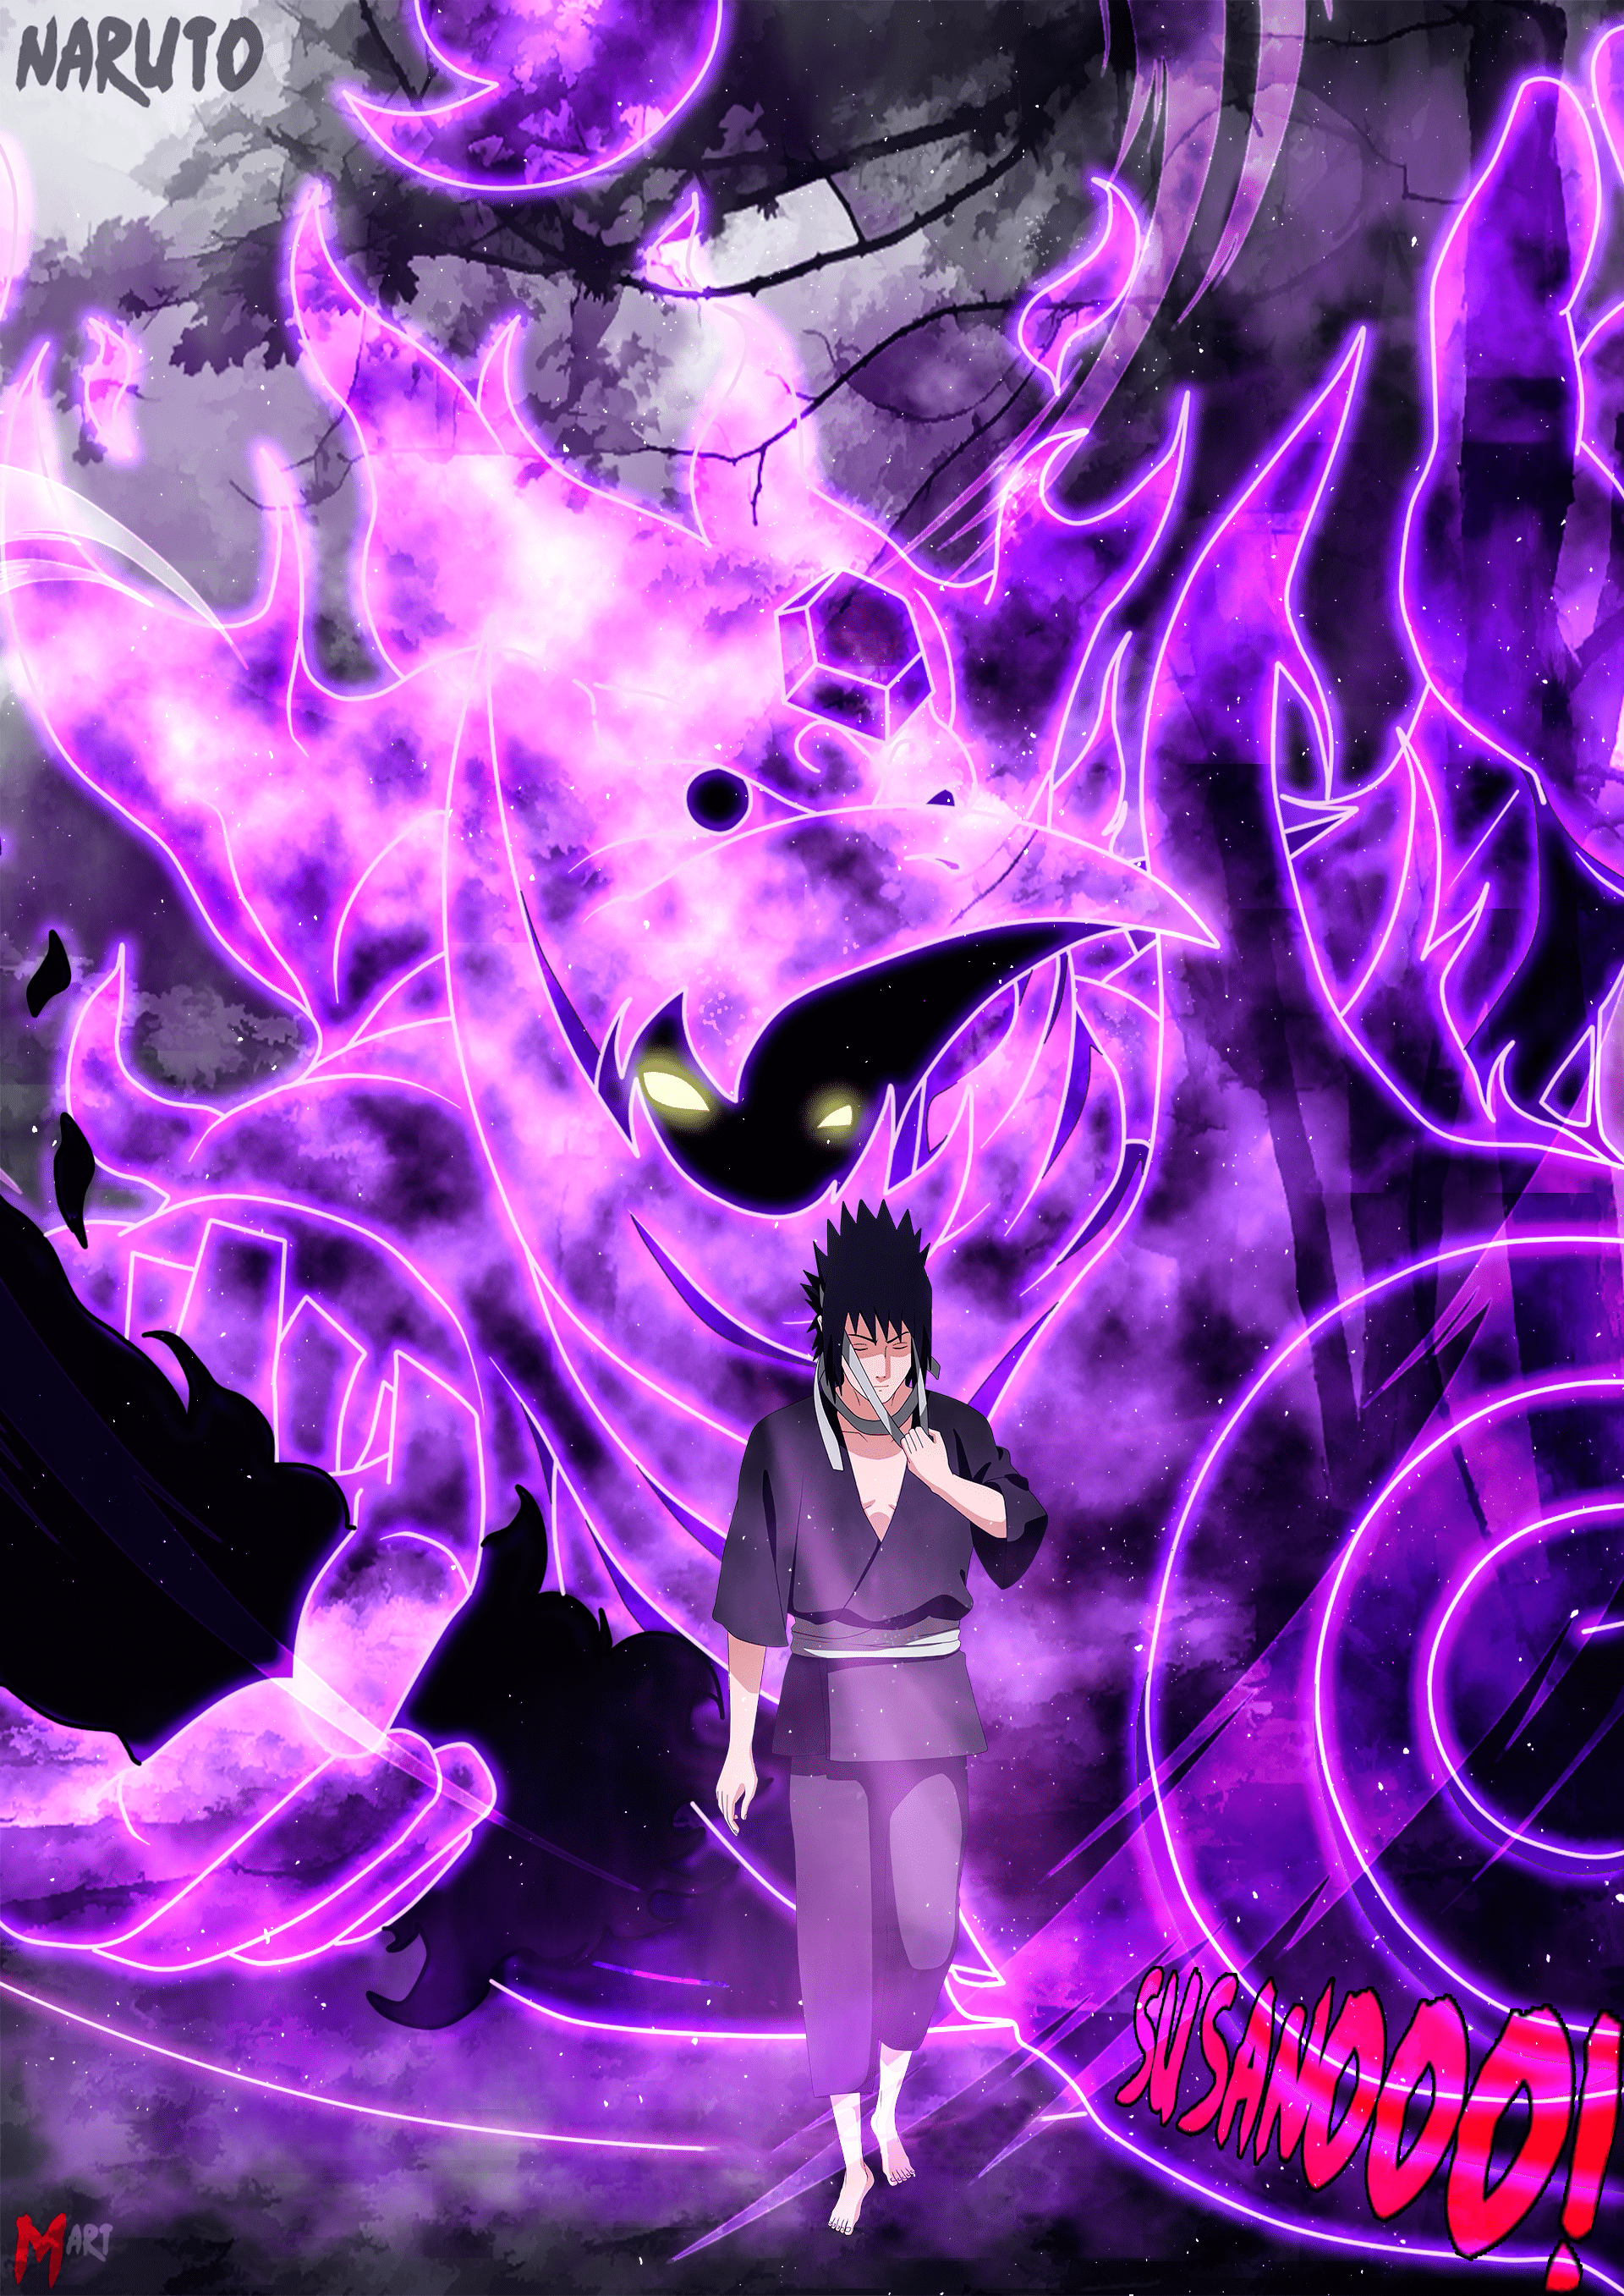 Nếu bạn là fan của Naruto thì không thể bỏ qua ảnh Sasuke chất lượng 4K này. Với độ phân giải cao, màu sắc sống động và chi tiết tuyệt vời, hình ảnh được tạo ra để đưa bạn đến cùng thế giới giả tưởng mà Sasuke đang sống.